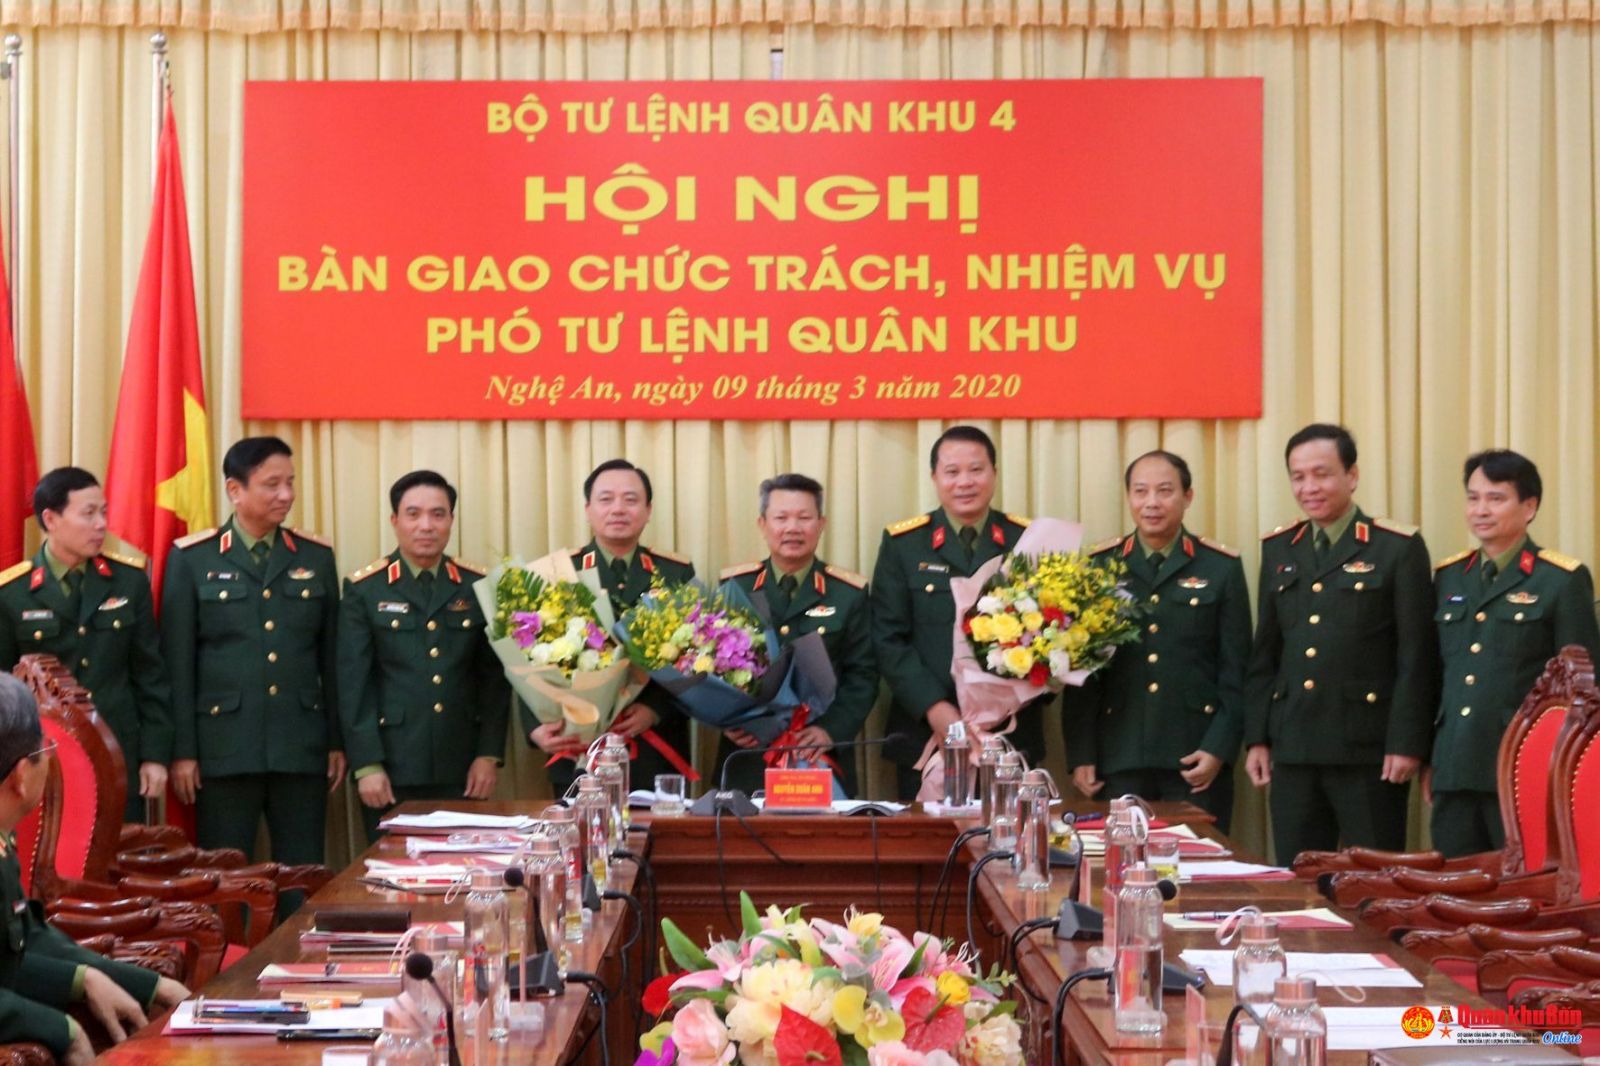 Lãnh đạo Bộ Tư lệnh Quân khu 4 và Binh đoàn 12 chúc mừng Thiếu tướng Nguyễn Sỹ Hội và Thiếu tướng Nguyễn Anh Tuấn